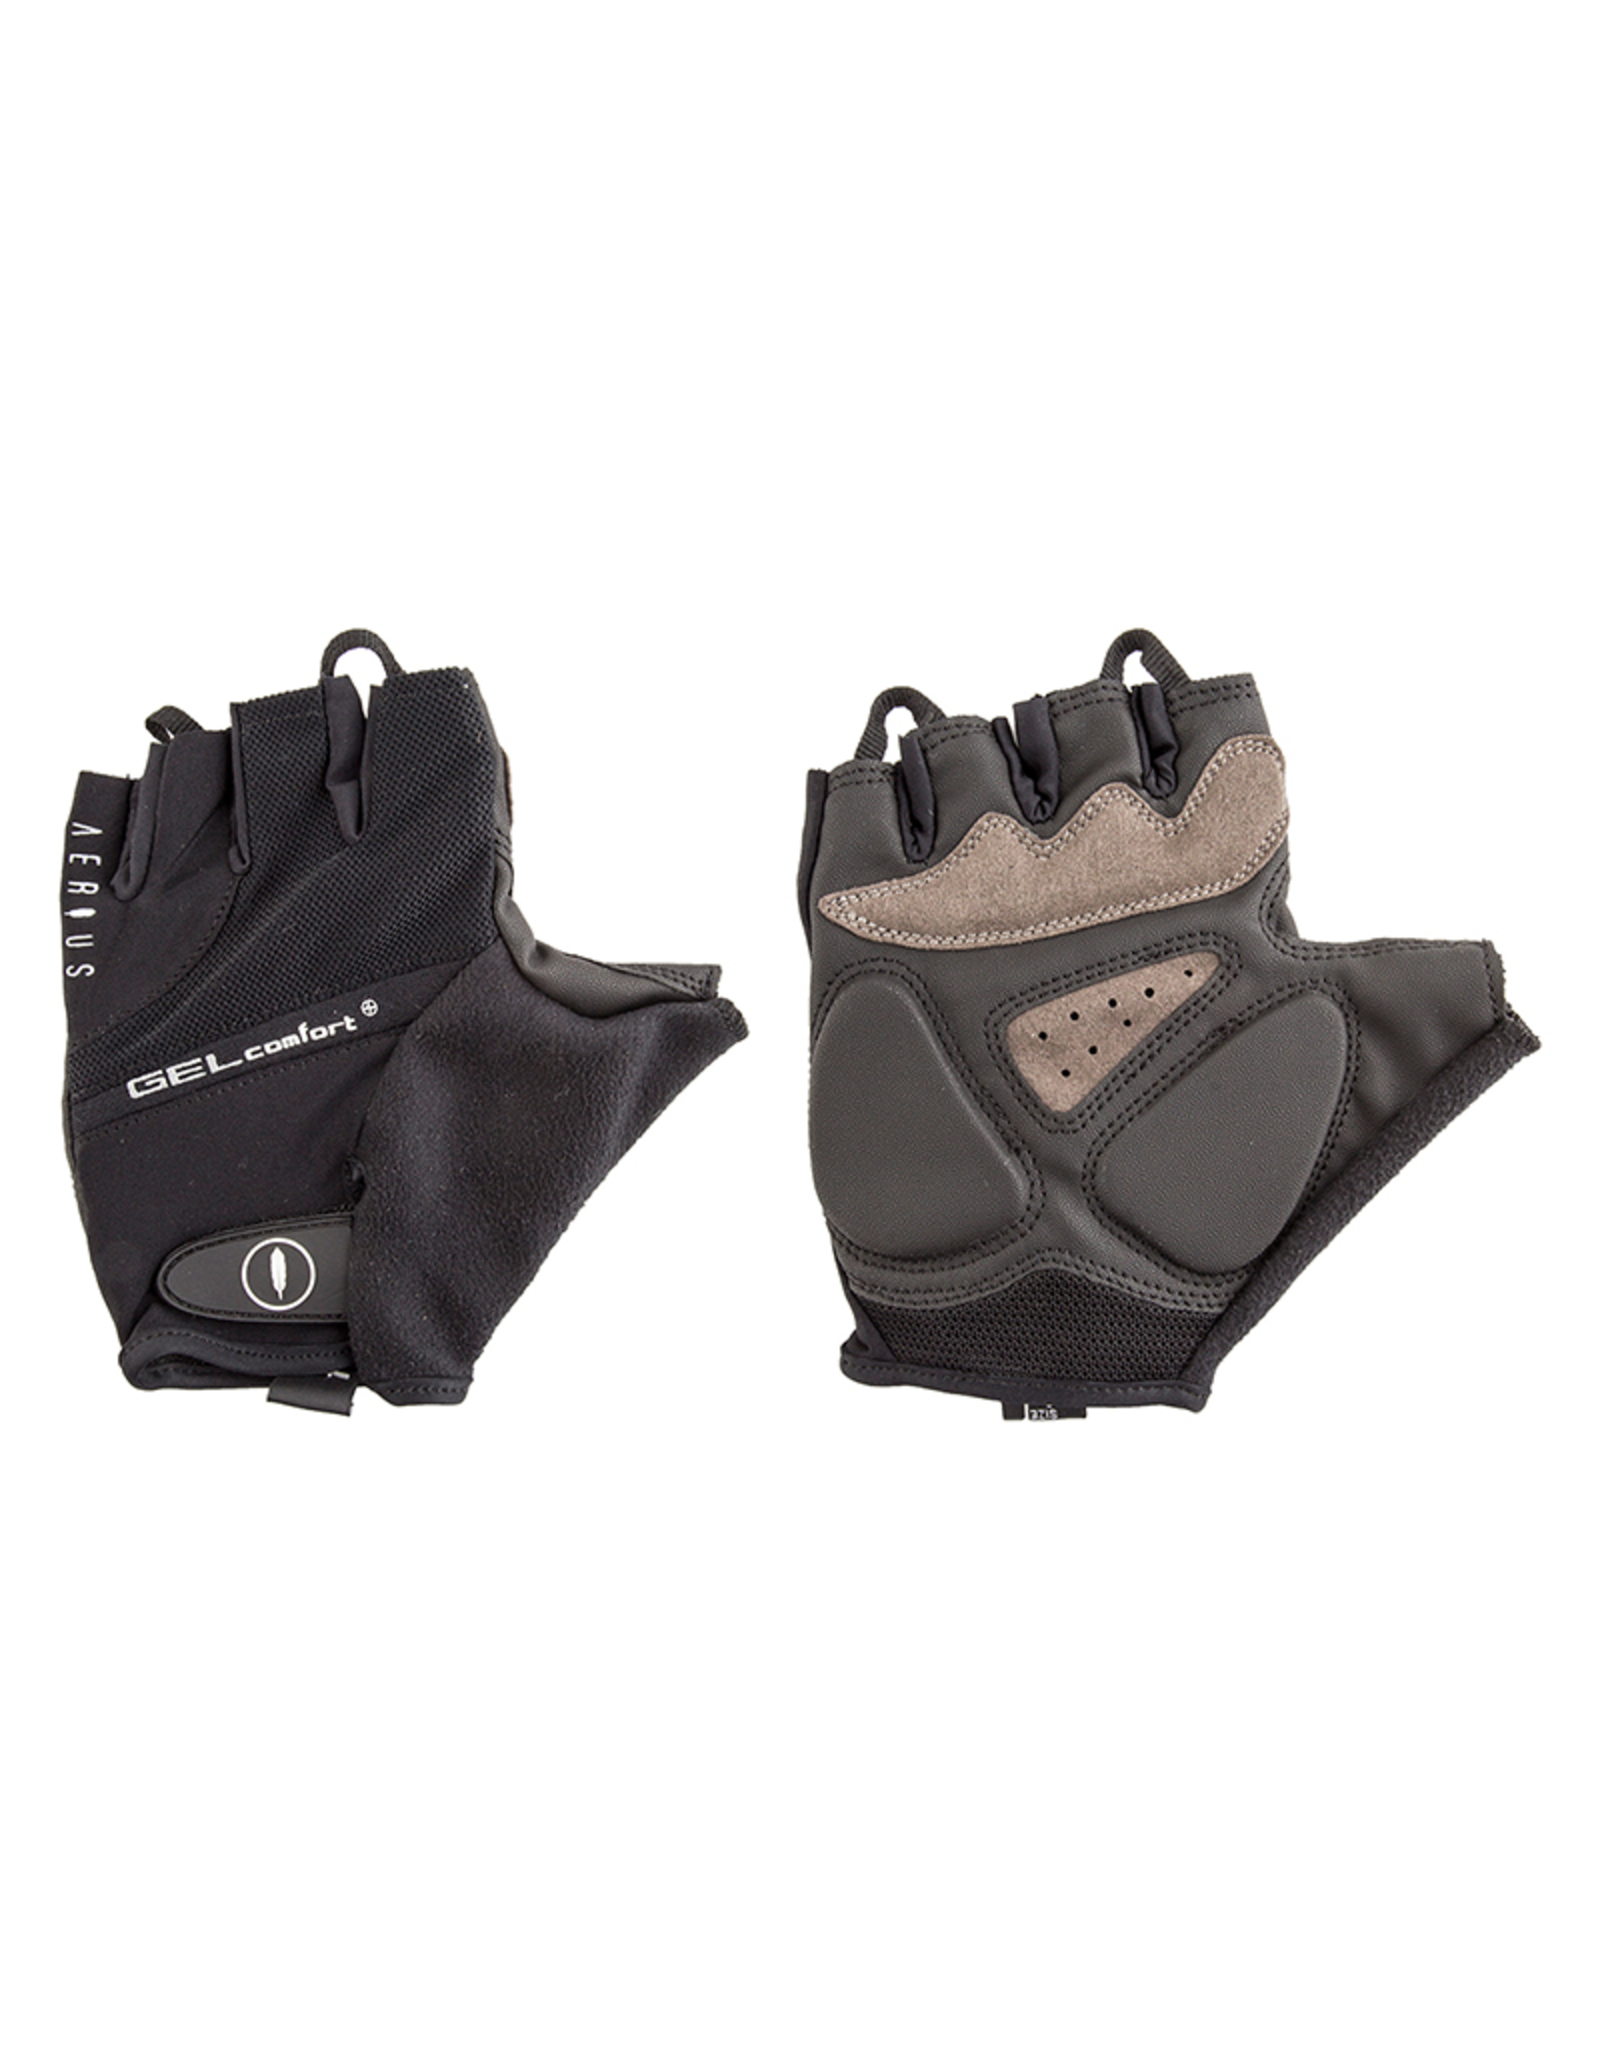 Aerius Aerius Gel Gloves - Black, Large